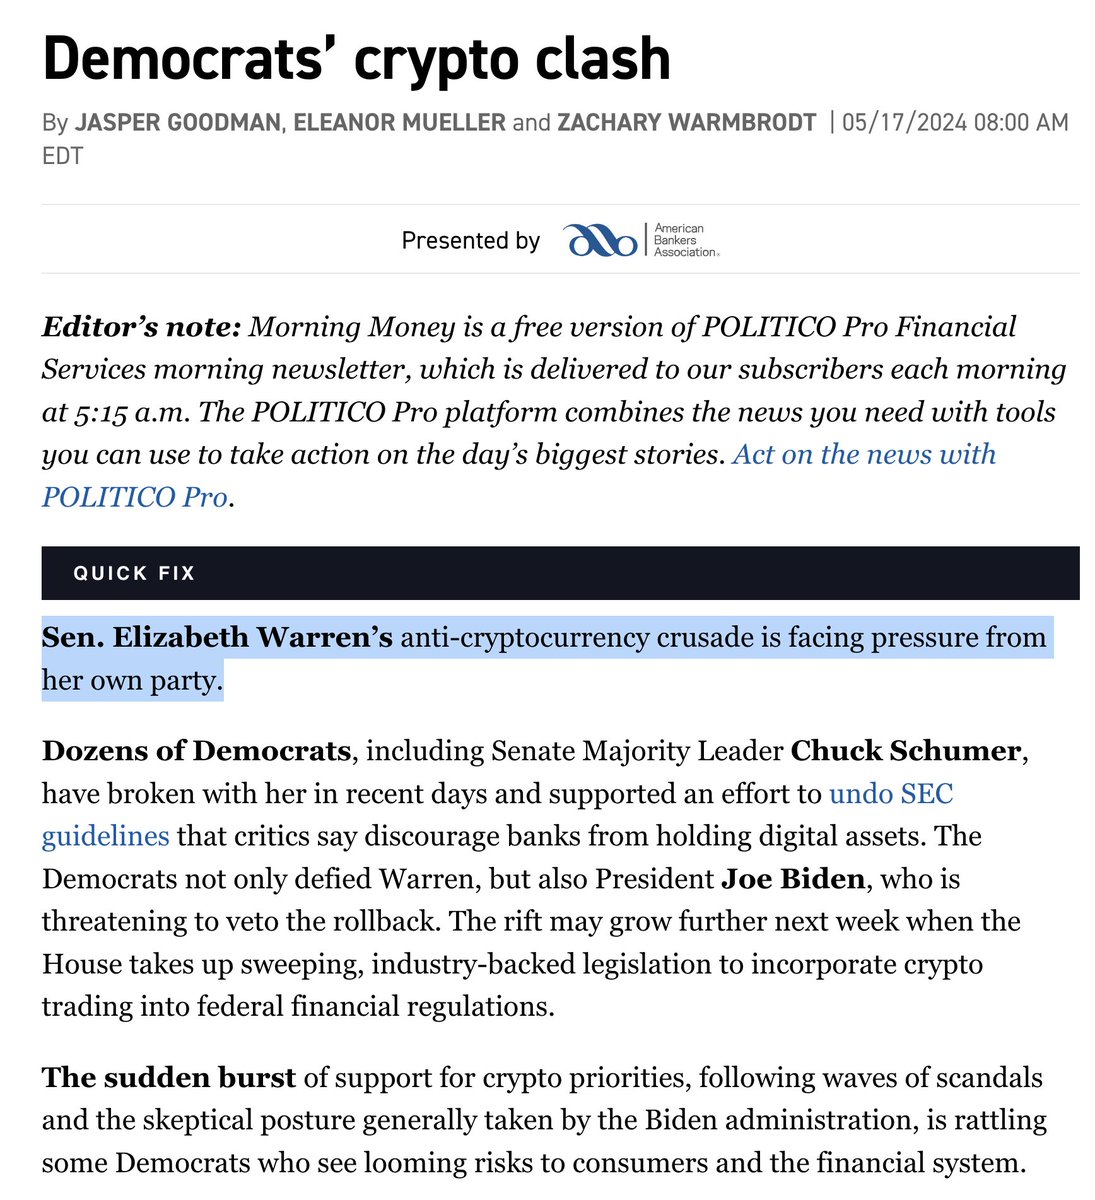 Tòa báo Politico, chuyên về chính trị, đã viết: Thượng nghị sĩ Elizabeth Warren đang phải đối mặt với áp lực từ chính đảng của mình trong chiến dịch chống lại crypto. Hàng chục đảng viên Dân chủ, bao gồm Lãnh đạo Đa số Thượng viện Chuck Schumer, đã bất